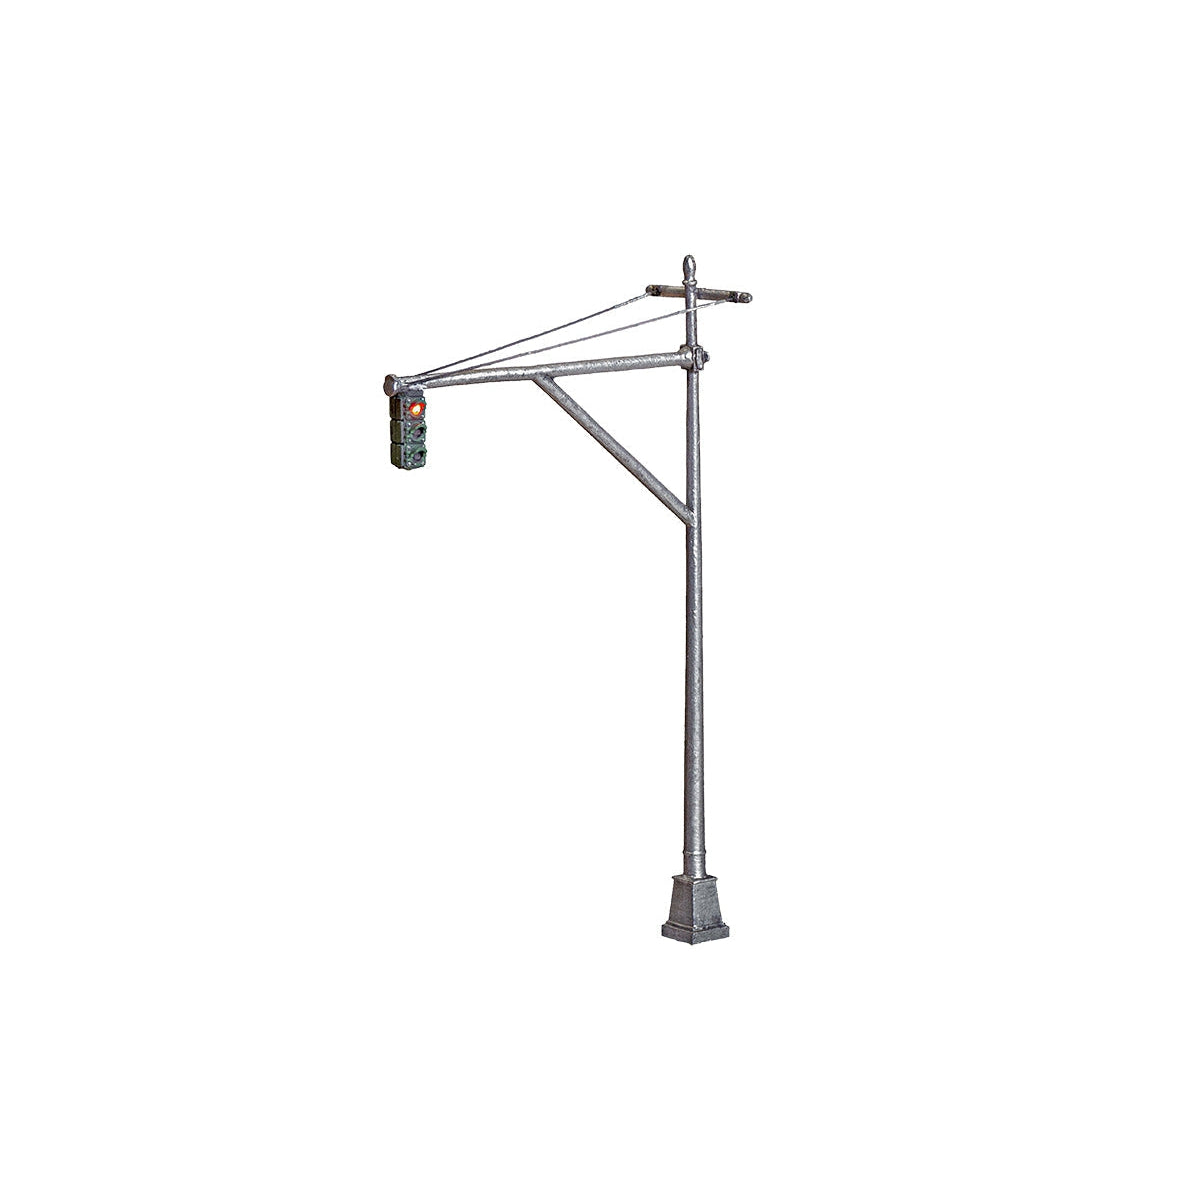 Woodland Scenics - JP5653 - Just Plug(TM) - Mast Arm Traffic Lights - HO Scale